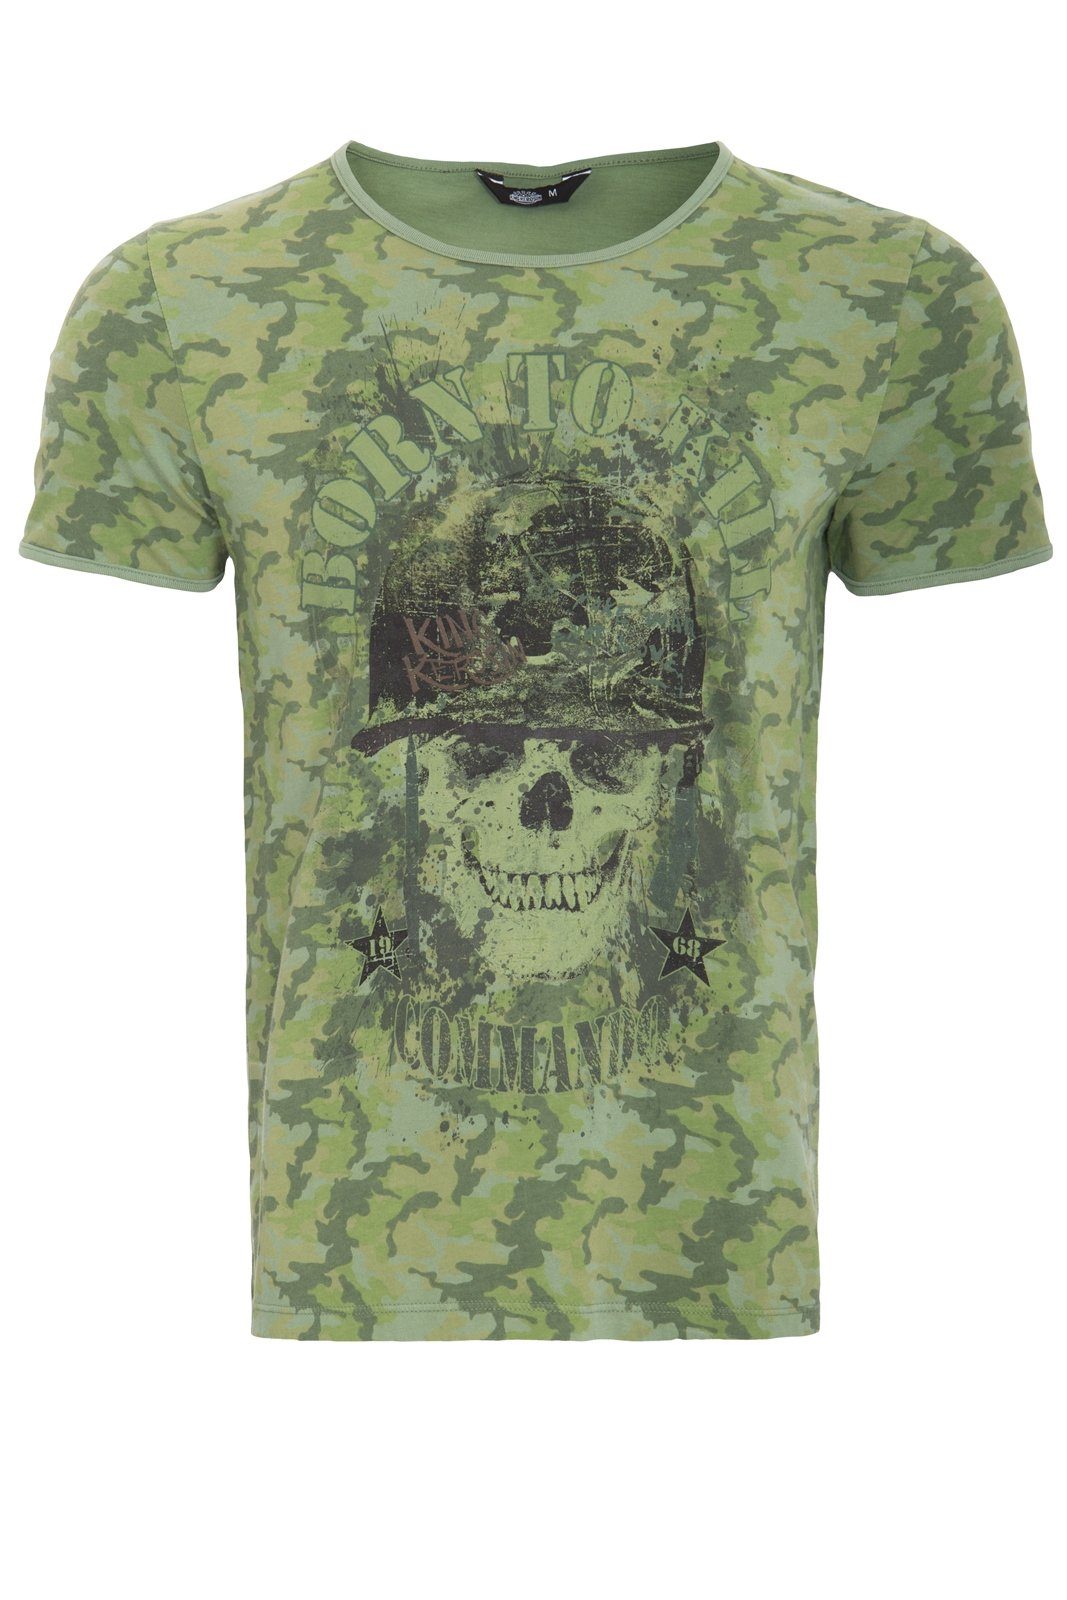 KingKerosin T-Shirt born to kill mit Tarn-Alloverprint und Skull-Motiv Evergreen